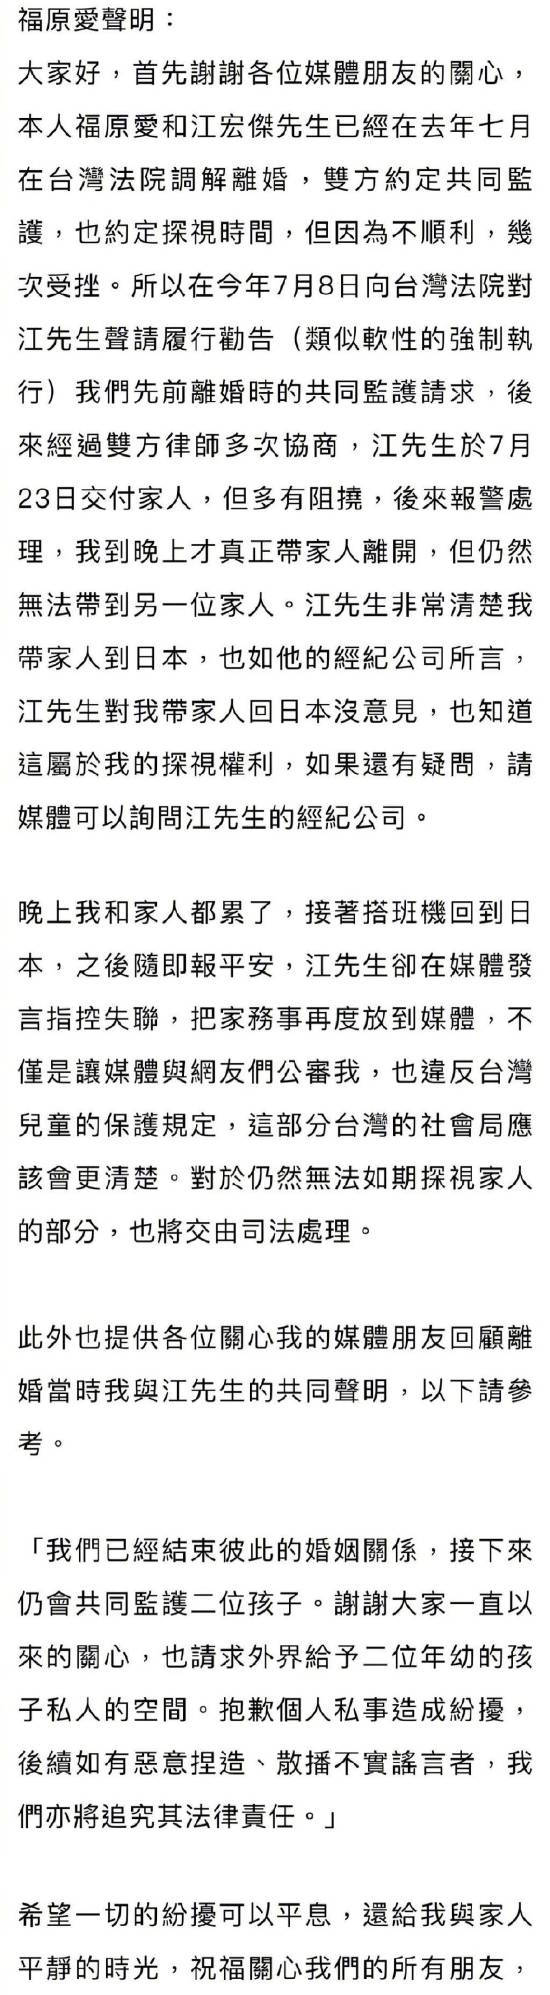 福原爱方发声明反驳江宏杰 对无法如期探视家人交由司法处理